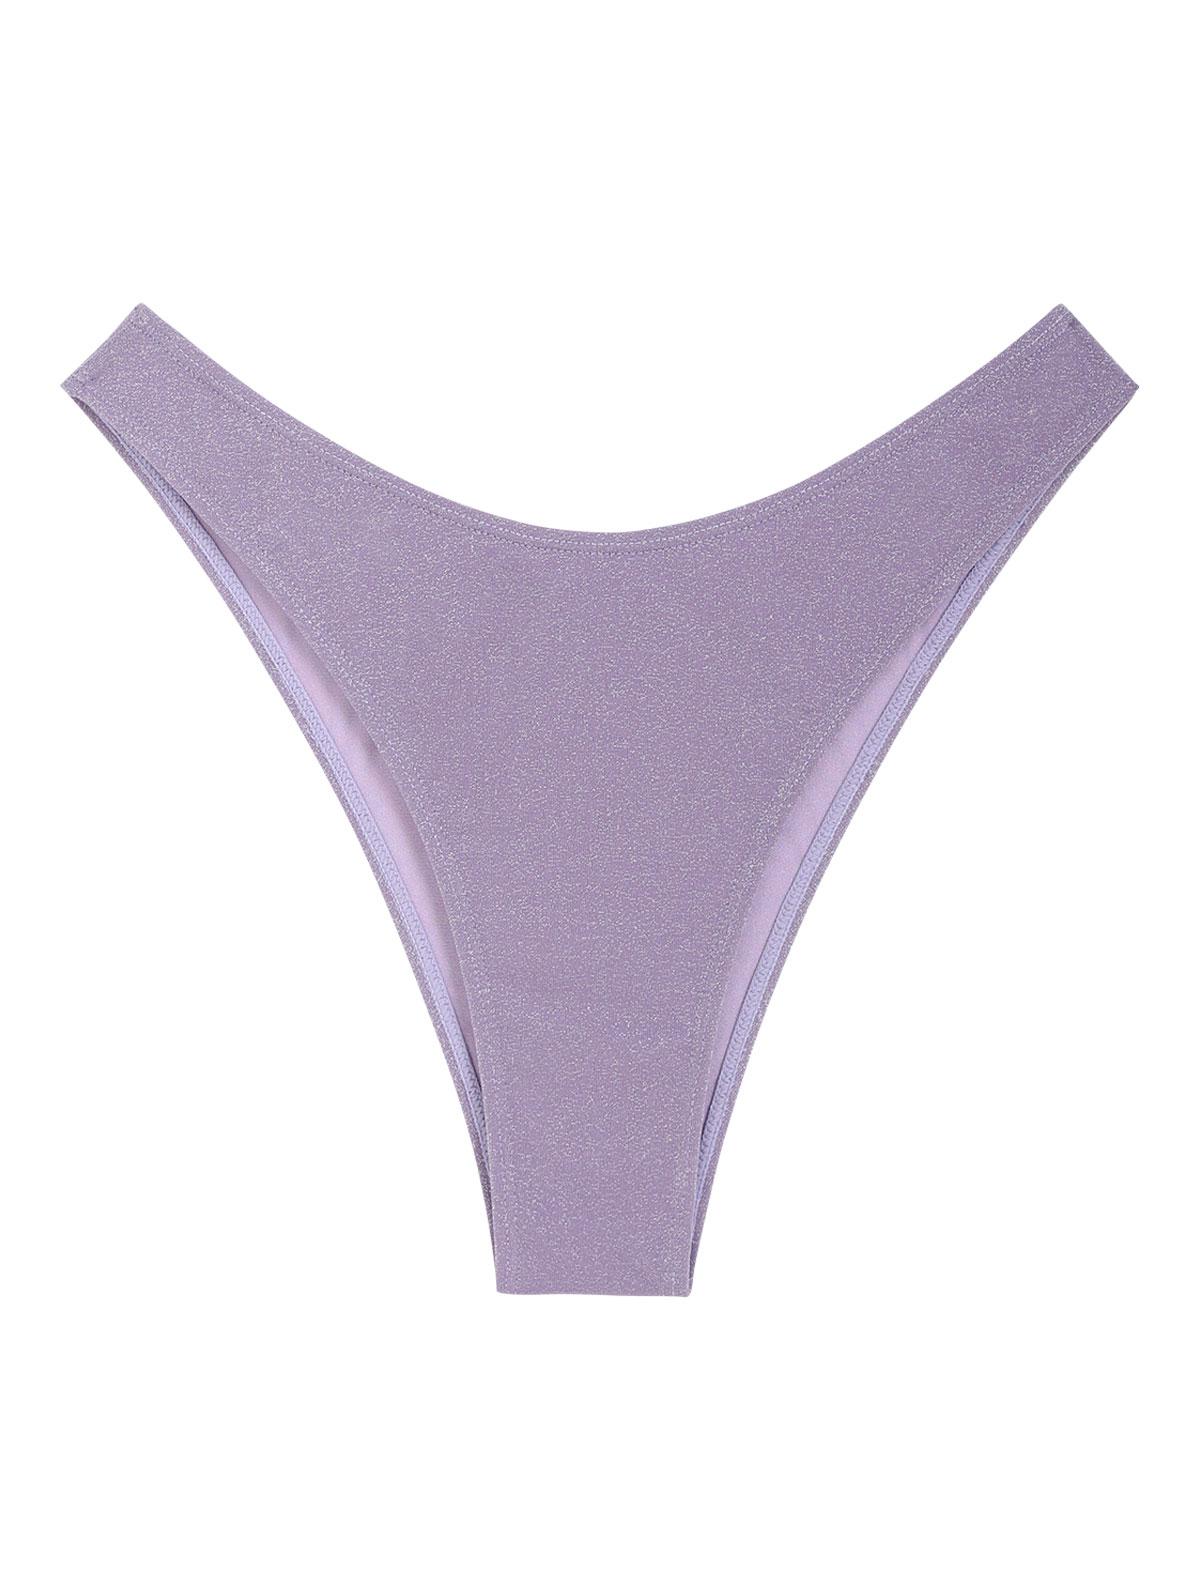 ZAFUL High Cut Metallic Glitter Sparkle Bikini Bottom M Purple